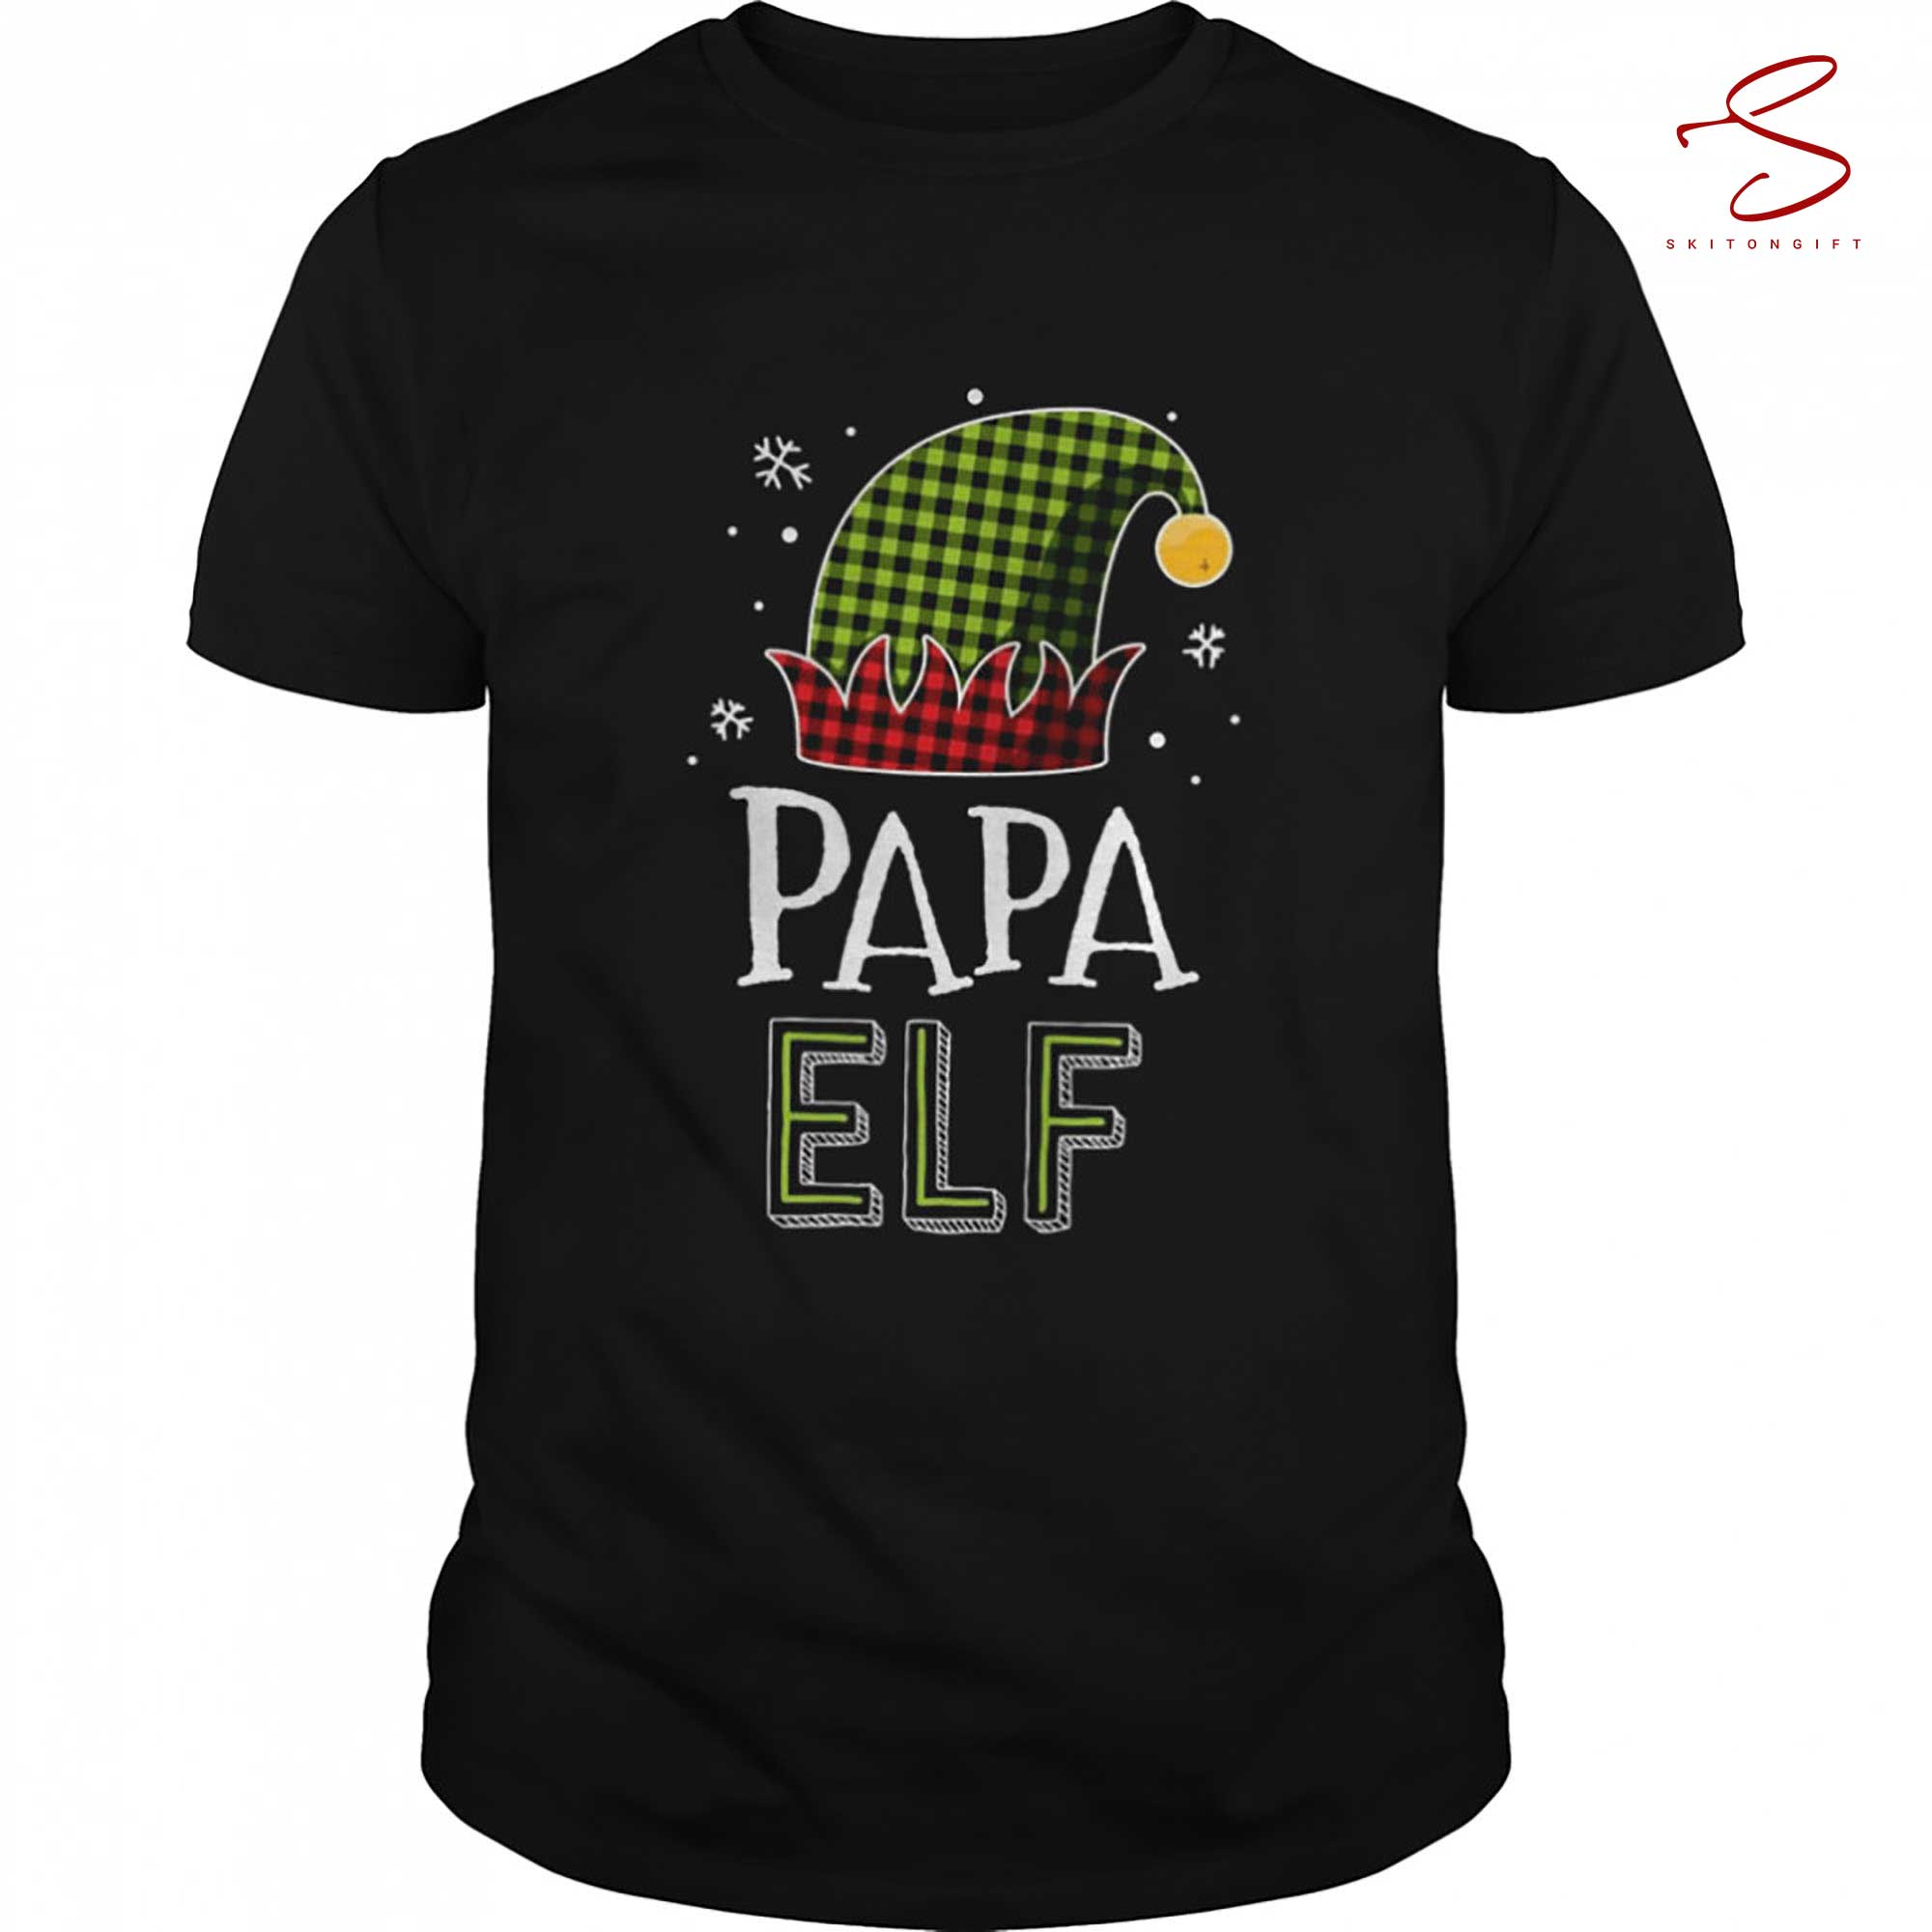 Skitongift Papa Elf Christmas T Shirt